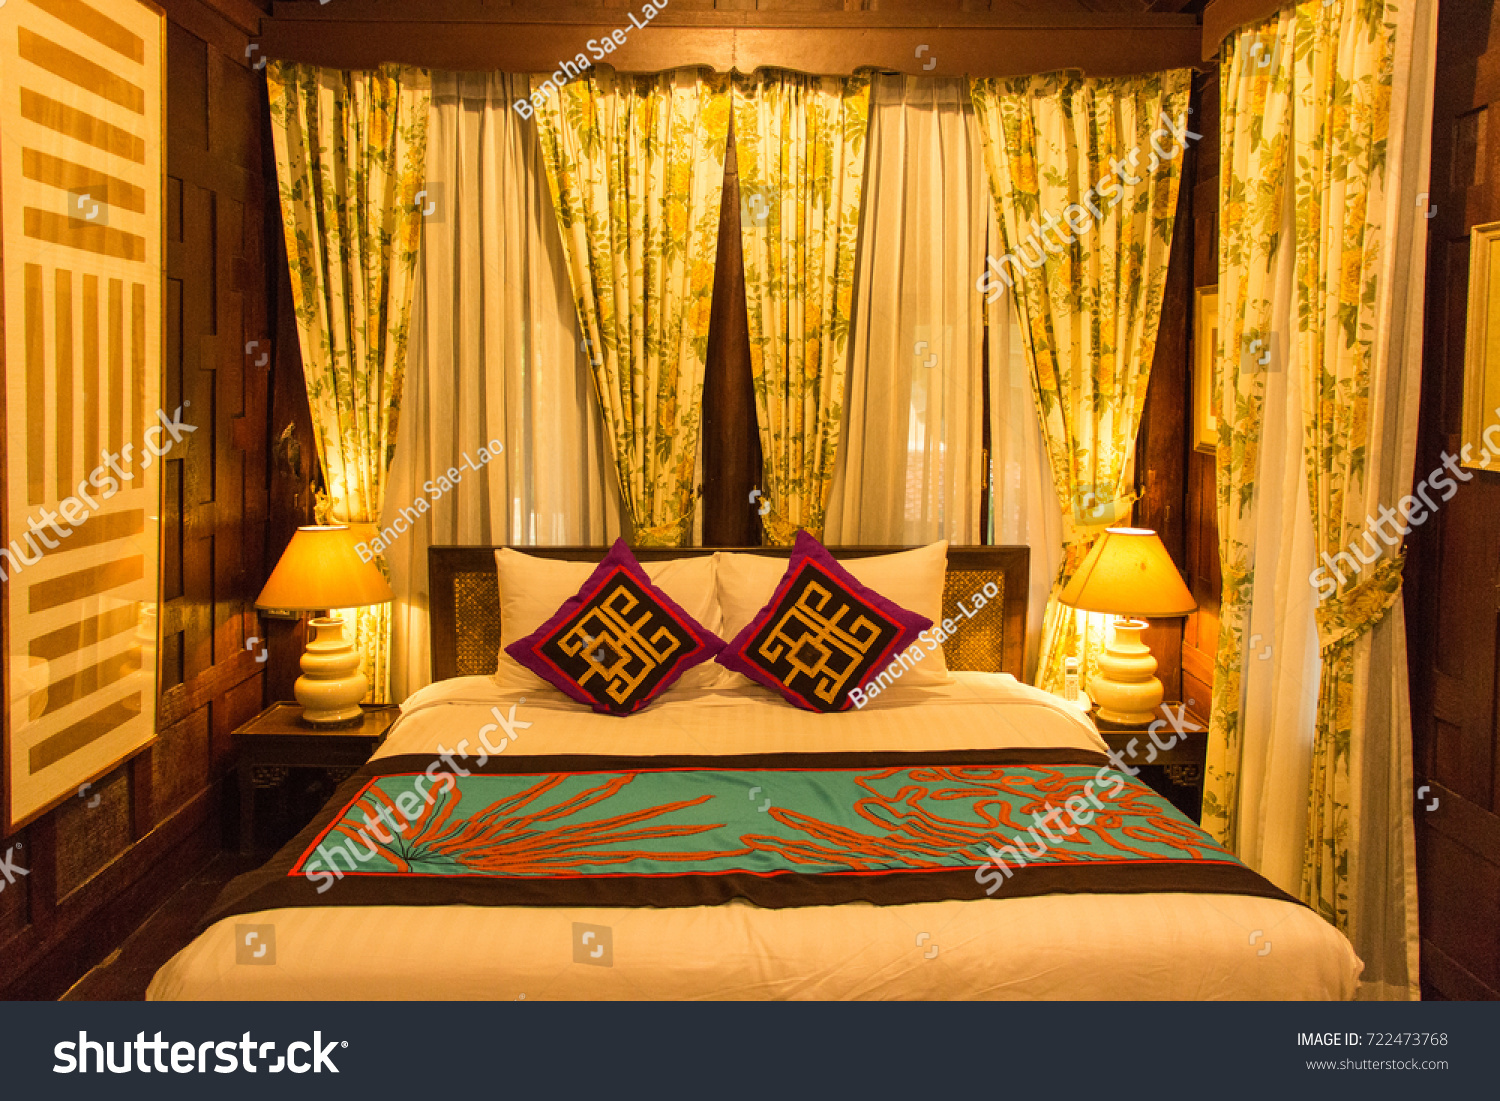 Elegant Cozy Bedroom Set Vintage Twin Stock Photo Edit Now 722473768